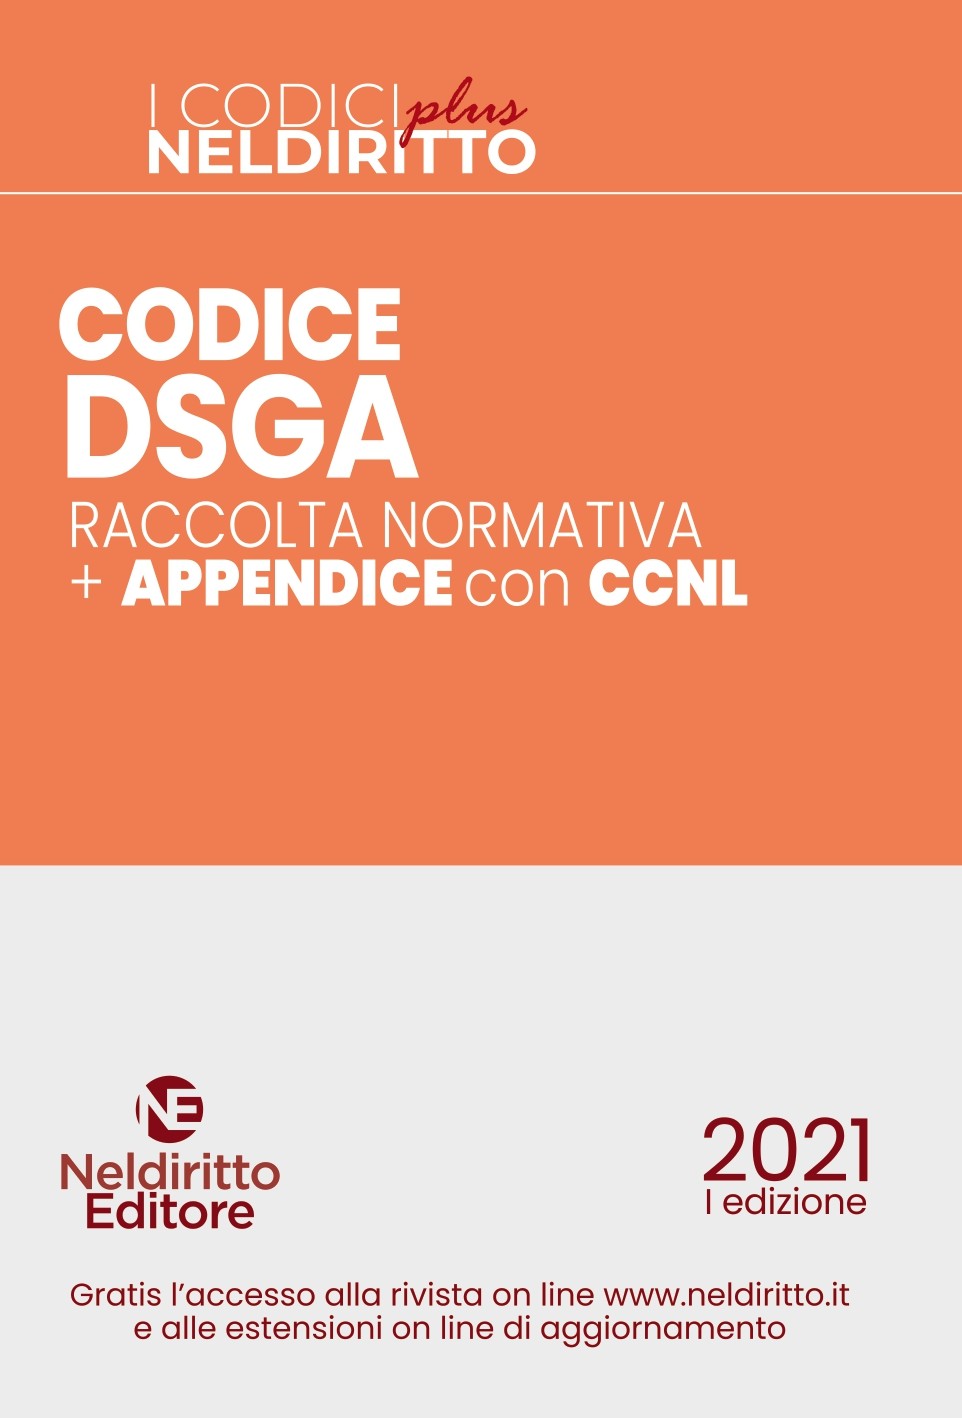 CODICE DSGA PLUS 2021